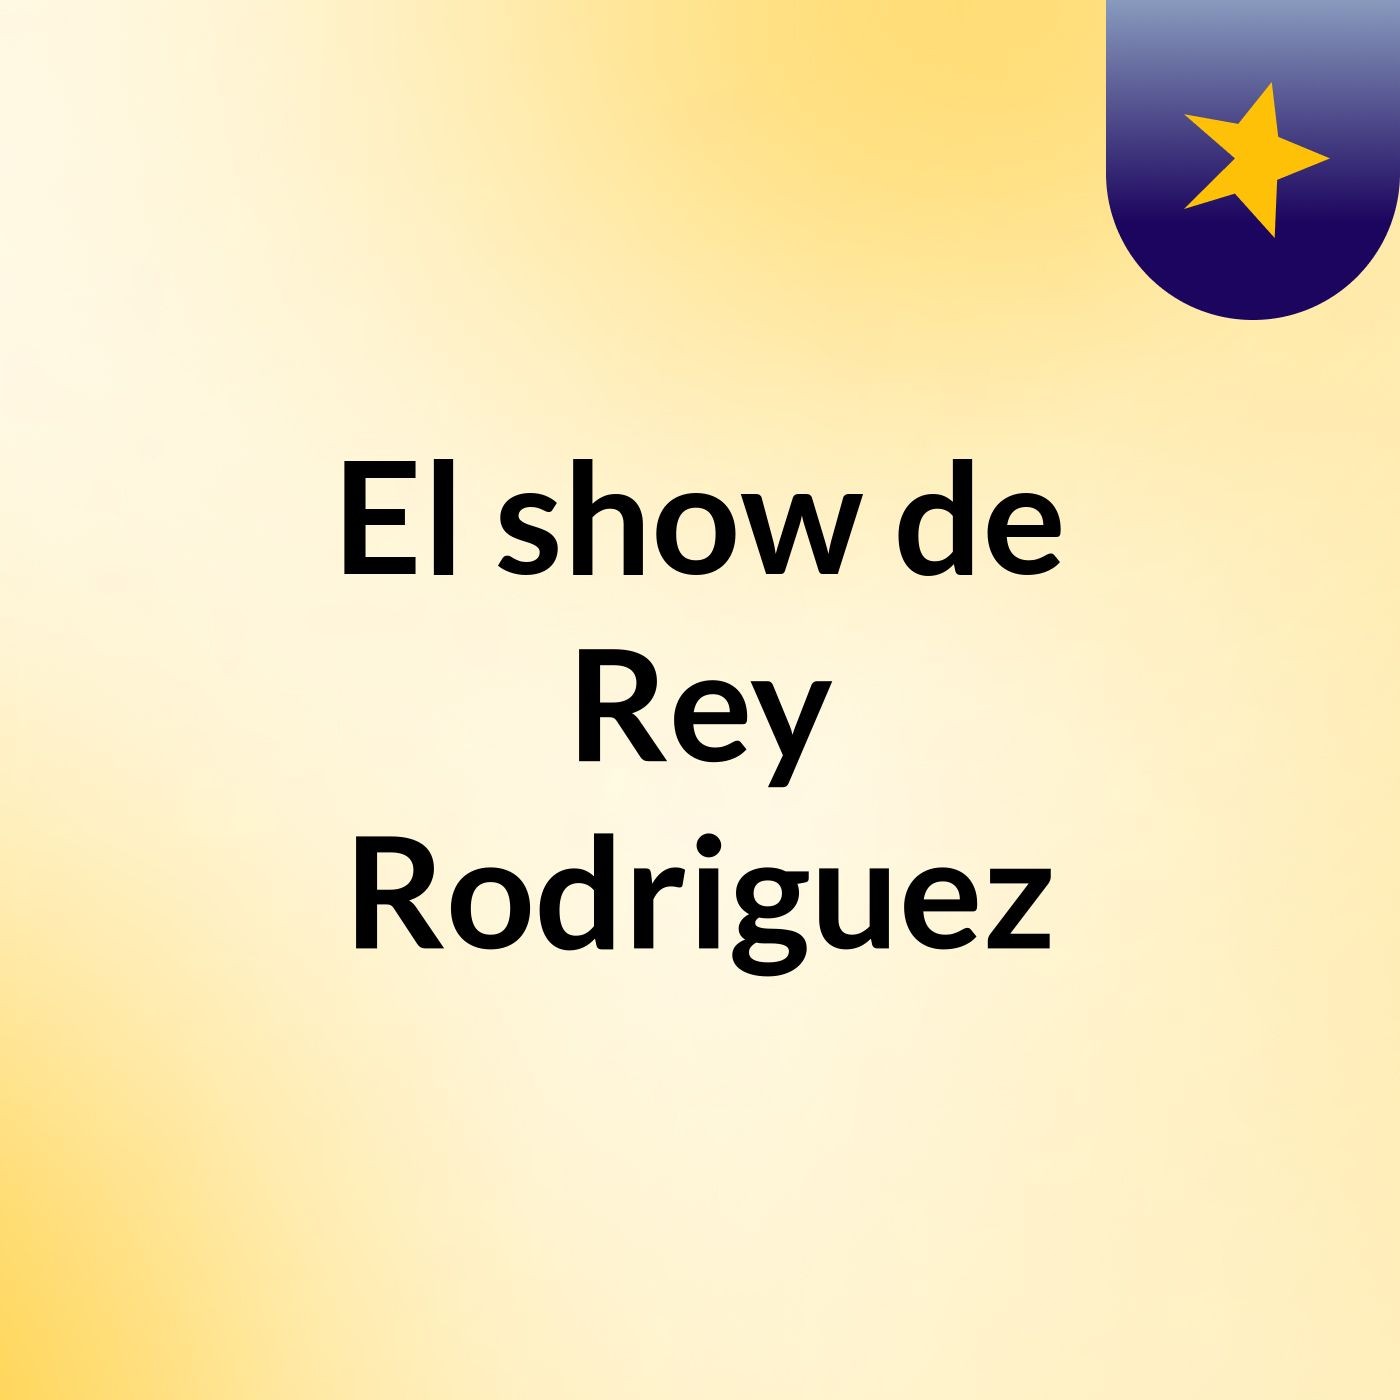 Episodio 5 - El show de Rey Rodriguez